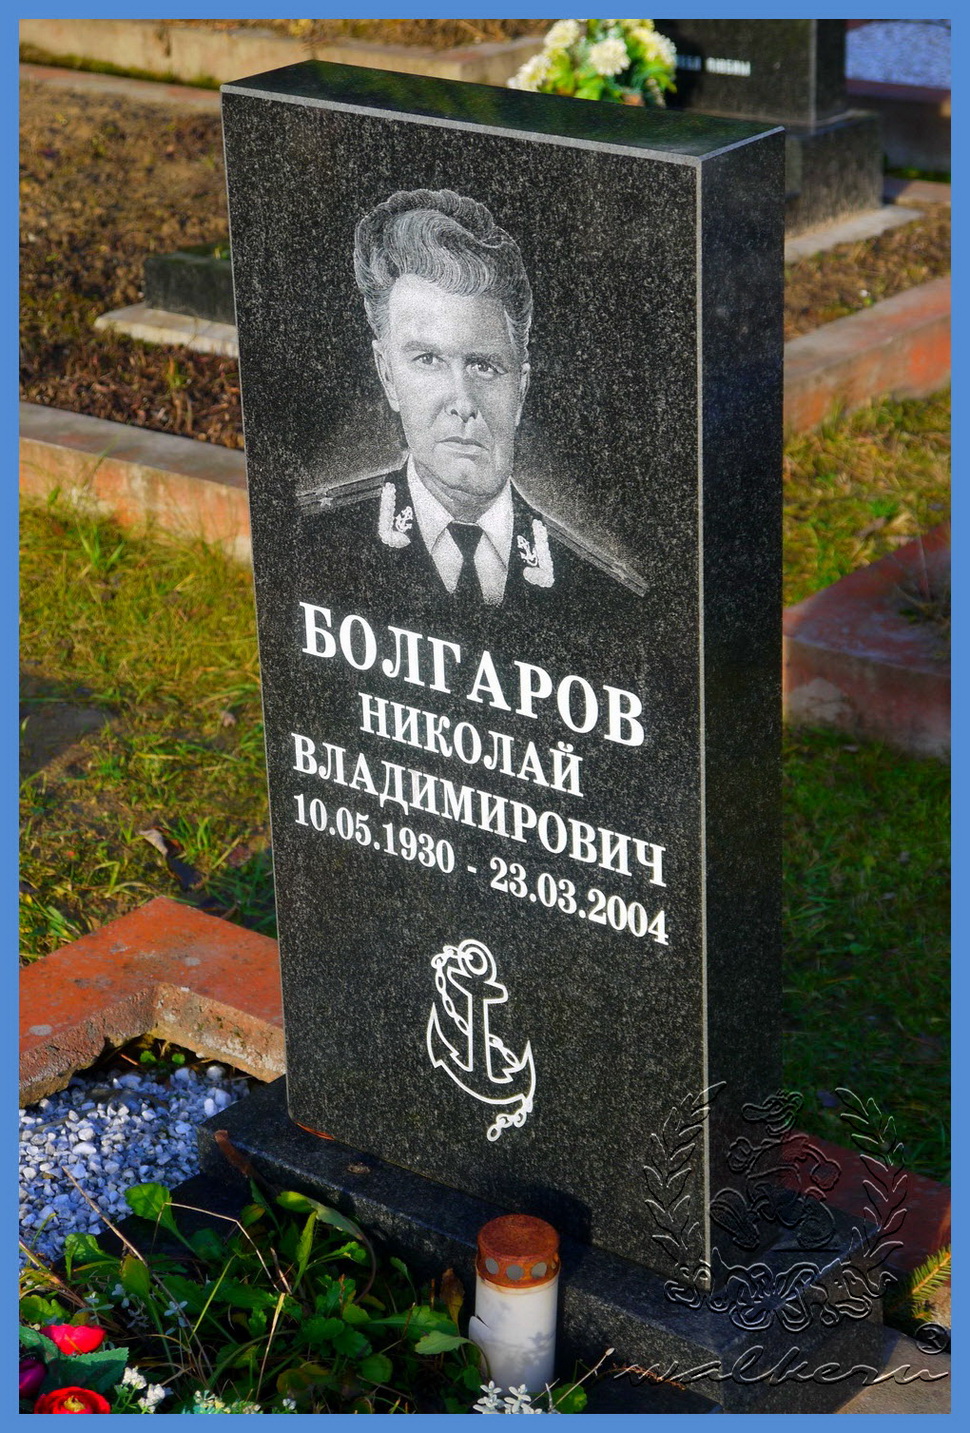 Болгаров Николай Владимирович